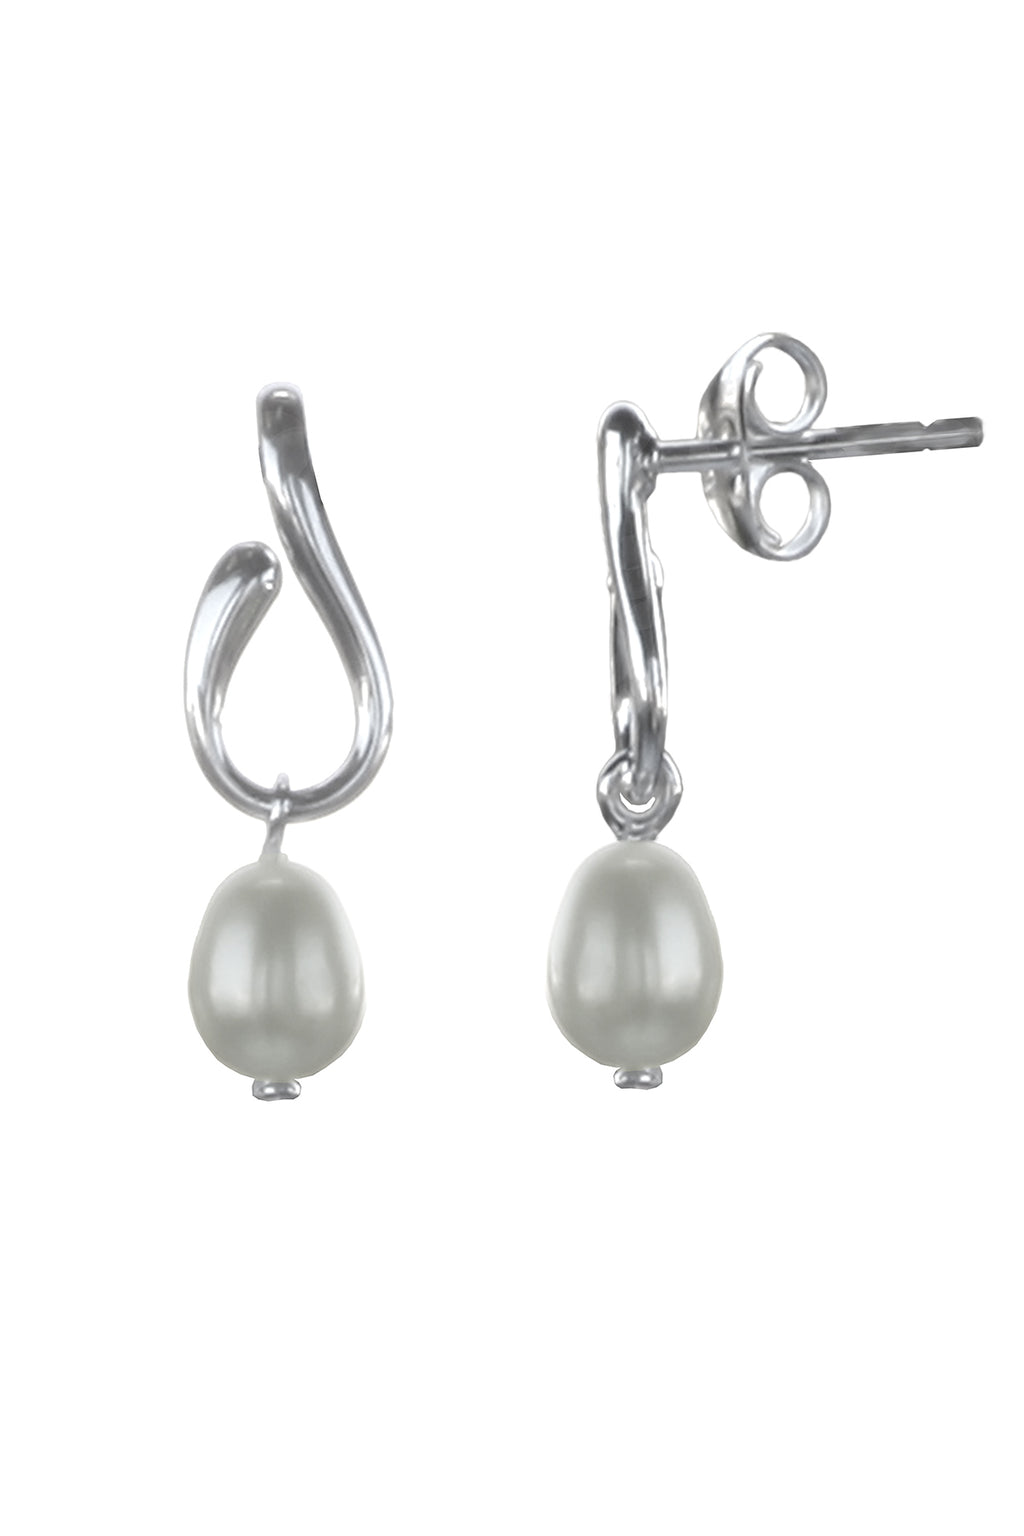 Pearl Earrings / Silver drop earrings / Nina B Jewellery